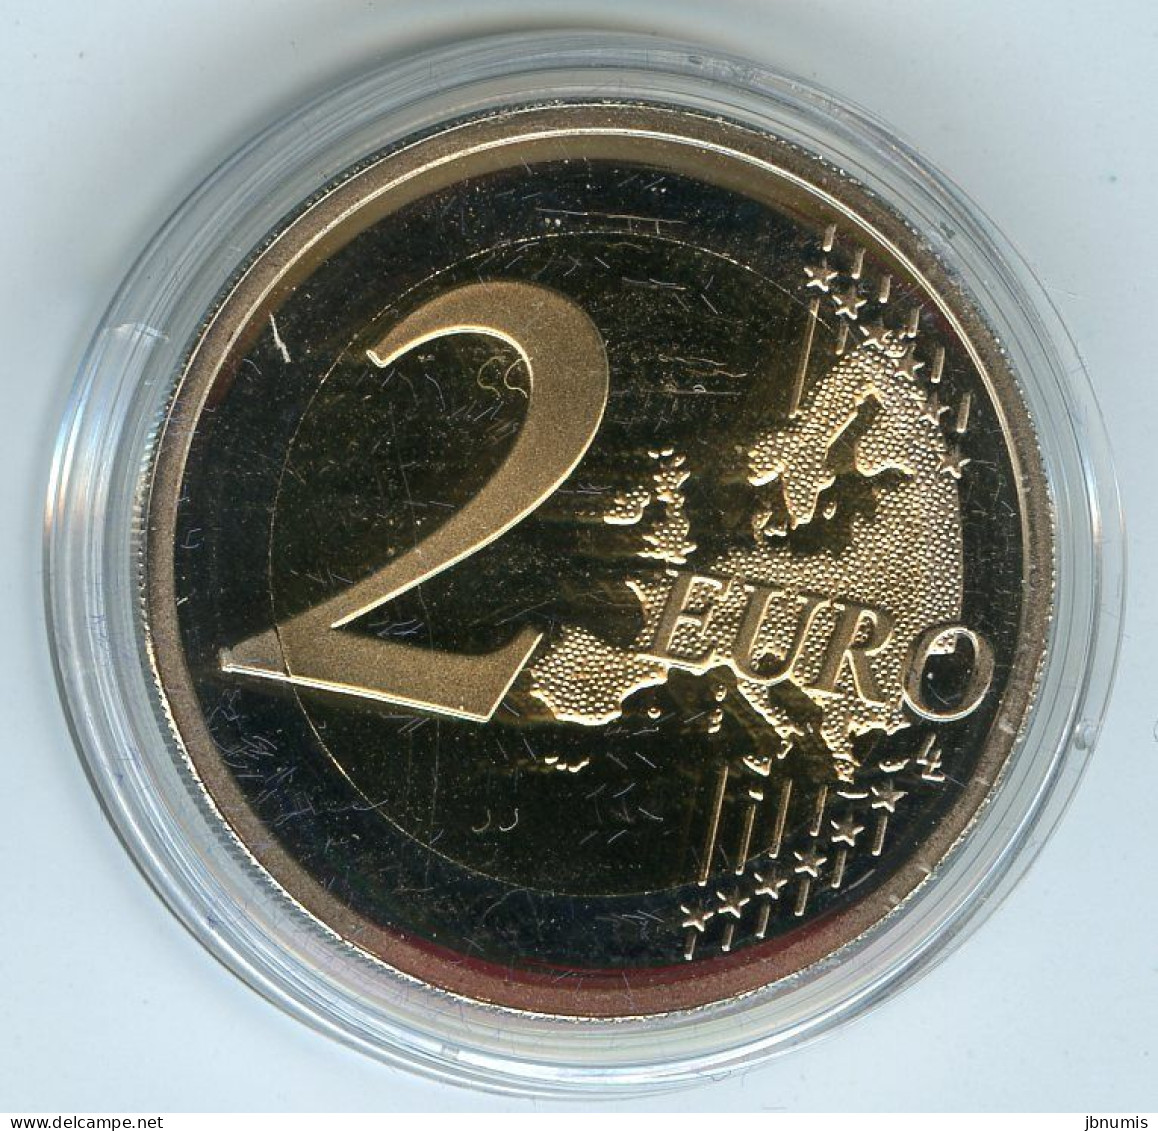 Irlande Ireland Eire 1 Cent à 2 Euro 2007 Coffret Officiel BE Proof PP Avec La 2 Euro 50 Ans Traité De Rome - Irlanda